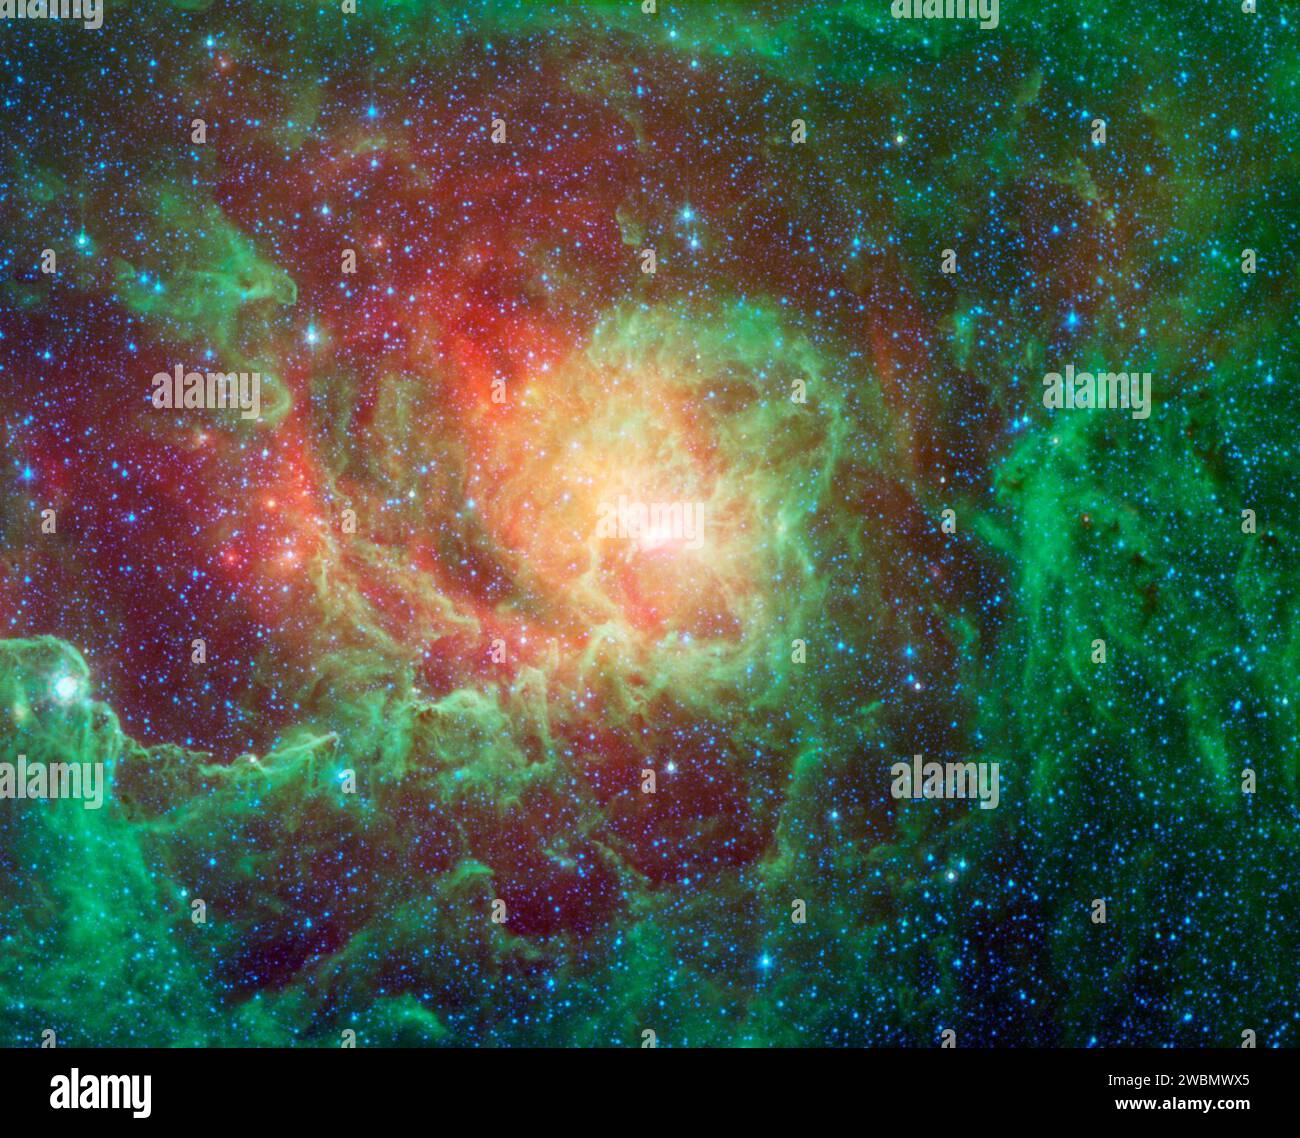 Nuvole di polvere vorticose e luminose stelle appena nate dominano la vista in questa immagine della nebulosa della laguna del telescopio spaziale Spitzer della NASA. La nebulosa si trova nella direzione generale del centro della nostra galassia nella costellazione del Sagittario. Foto Stock